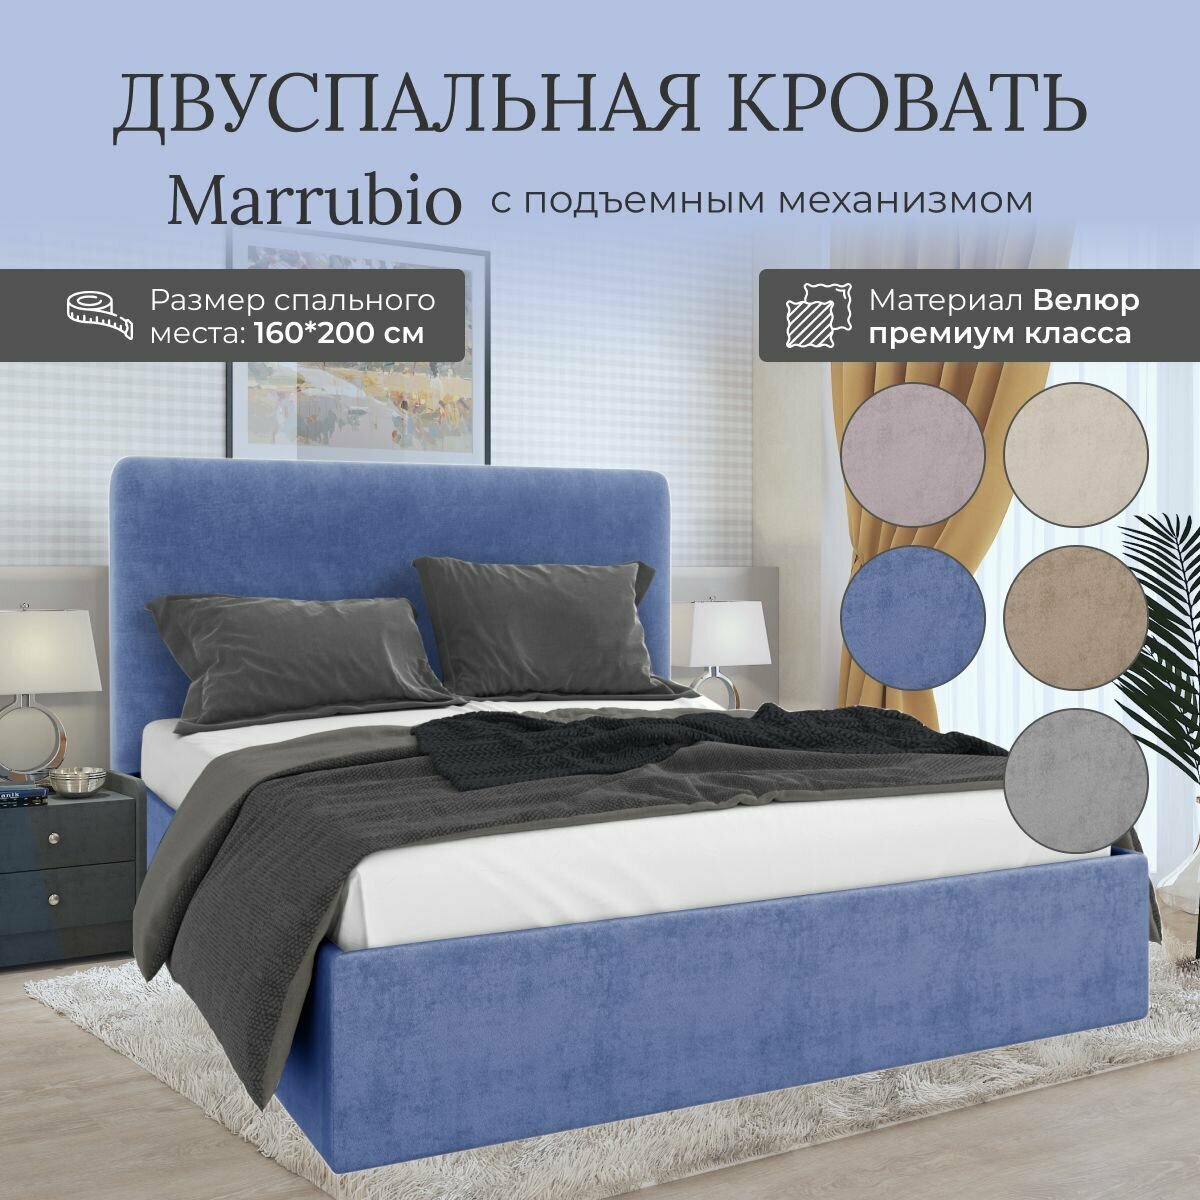 Кровать с подъемным механизмом Luxson Marrubio двуспальная размер 160х200